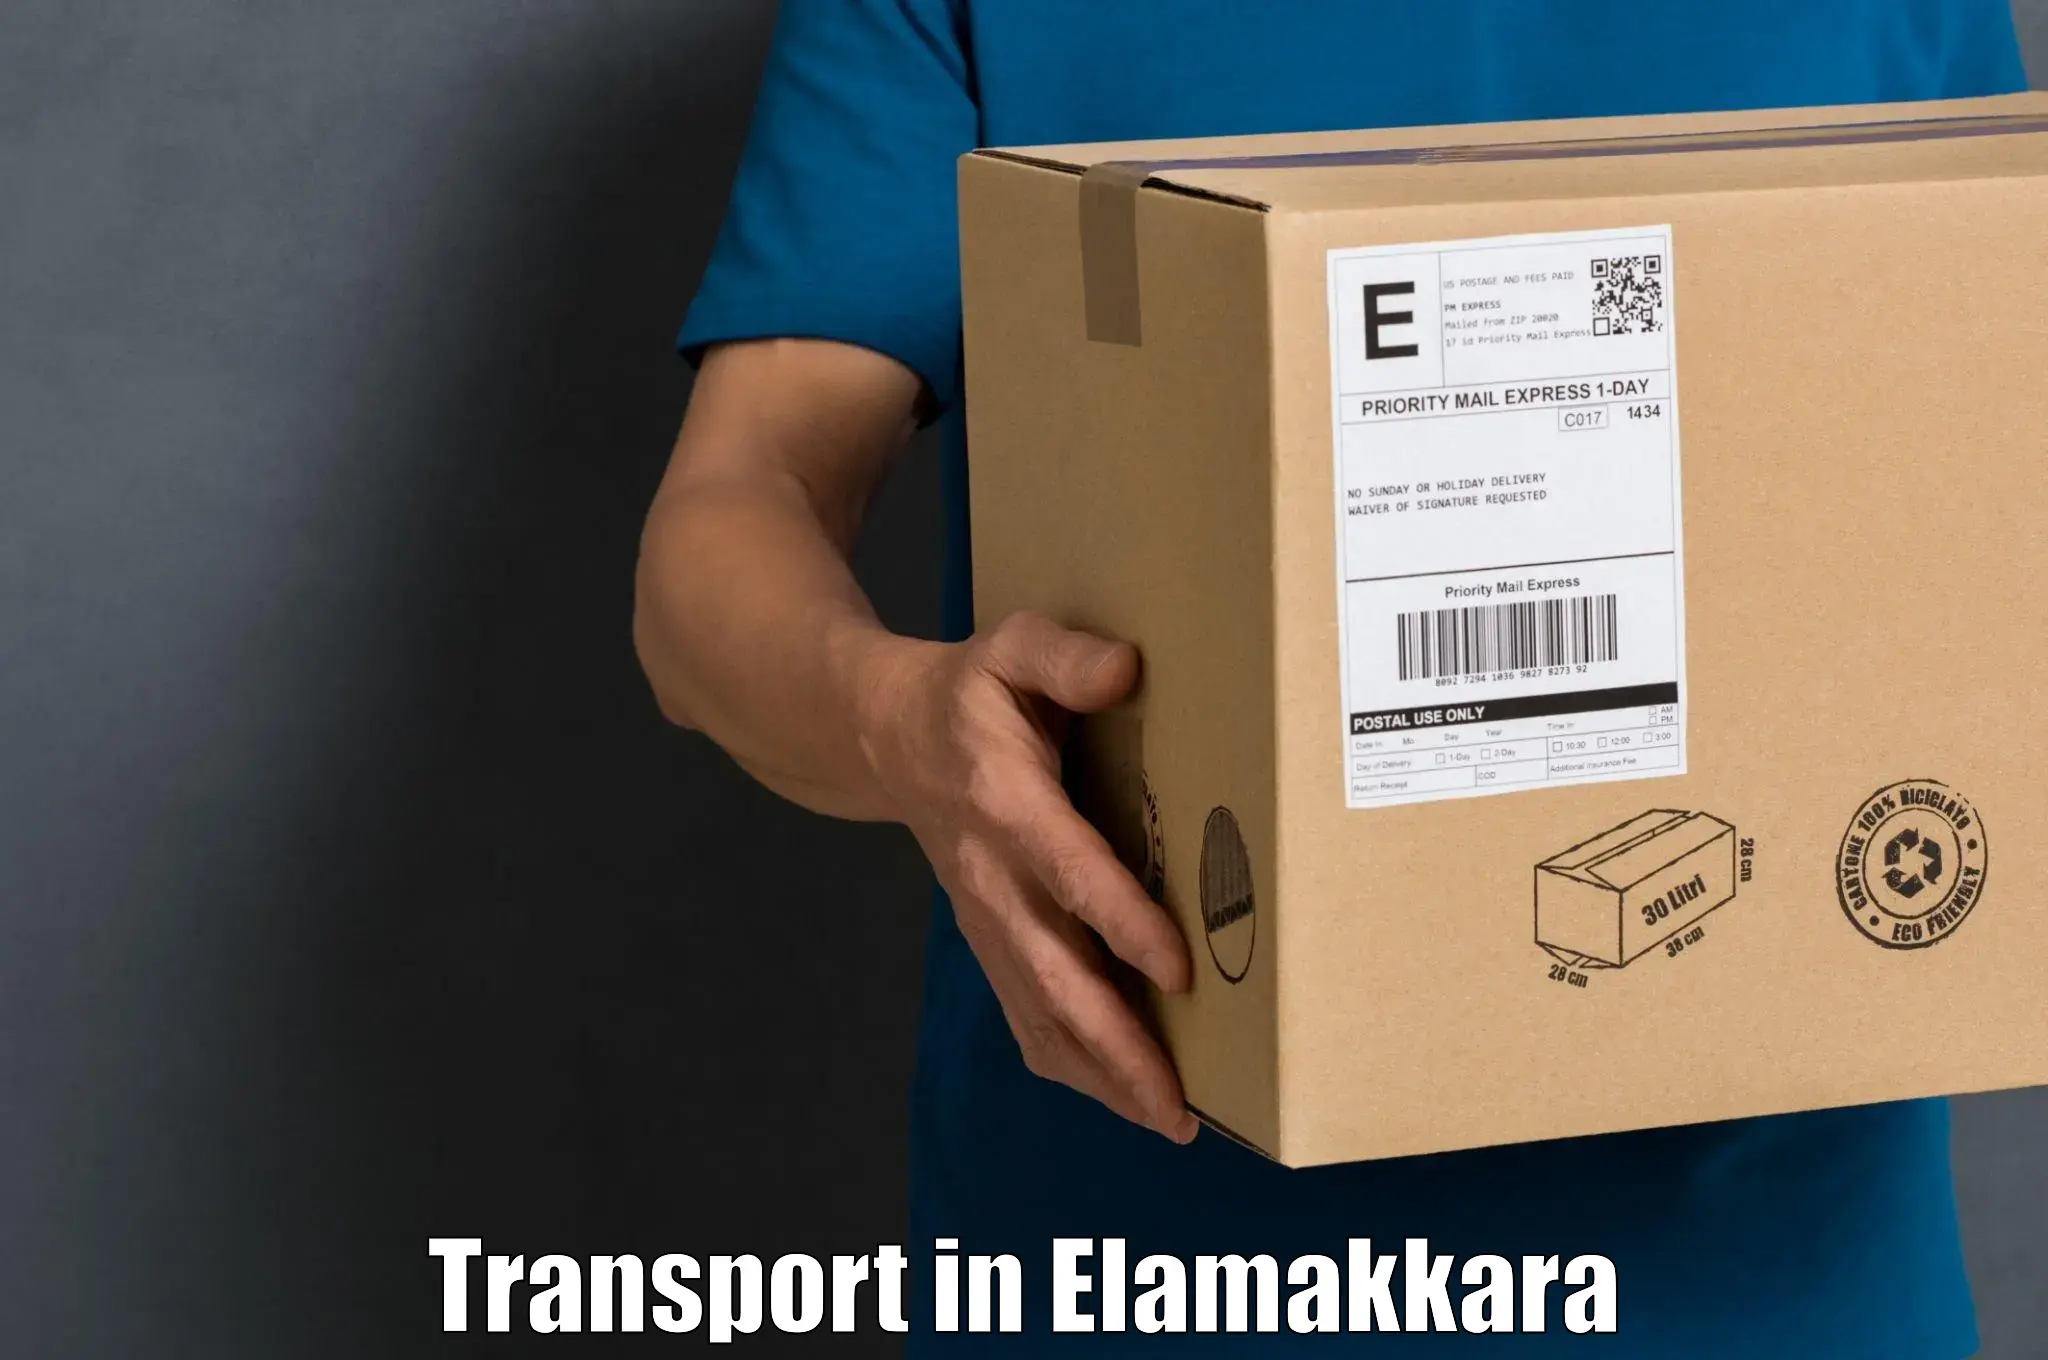 Cargo train transport services in Elamakkara